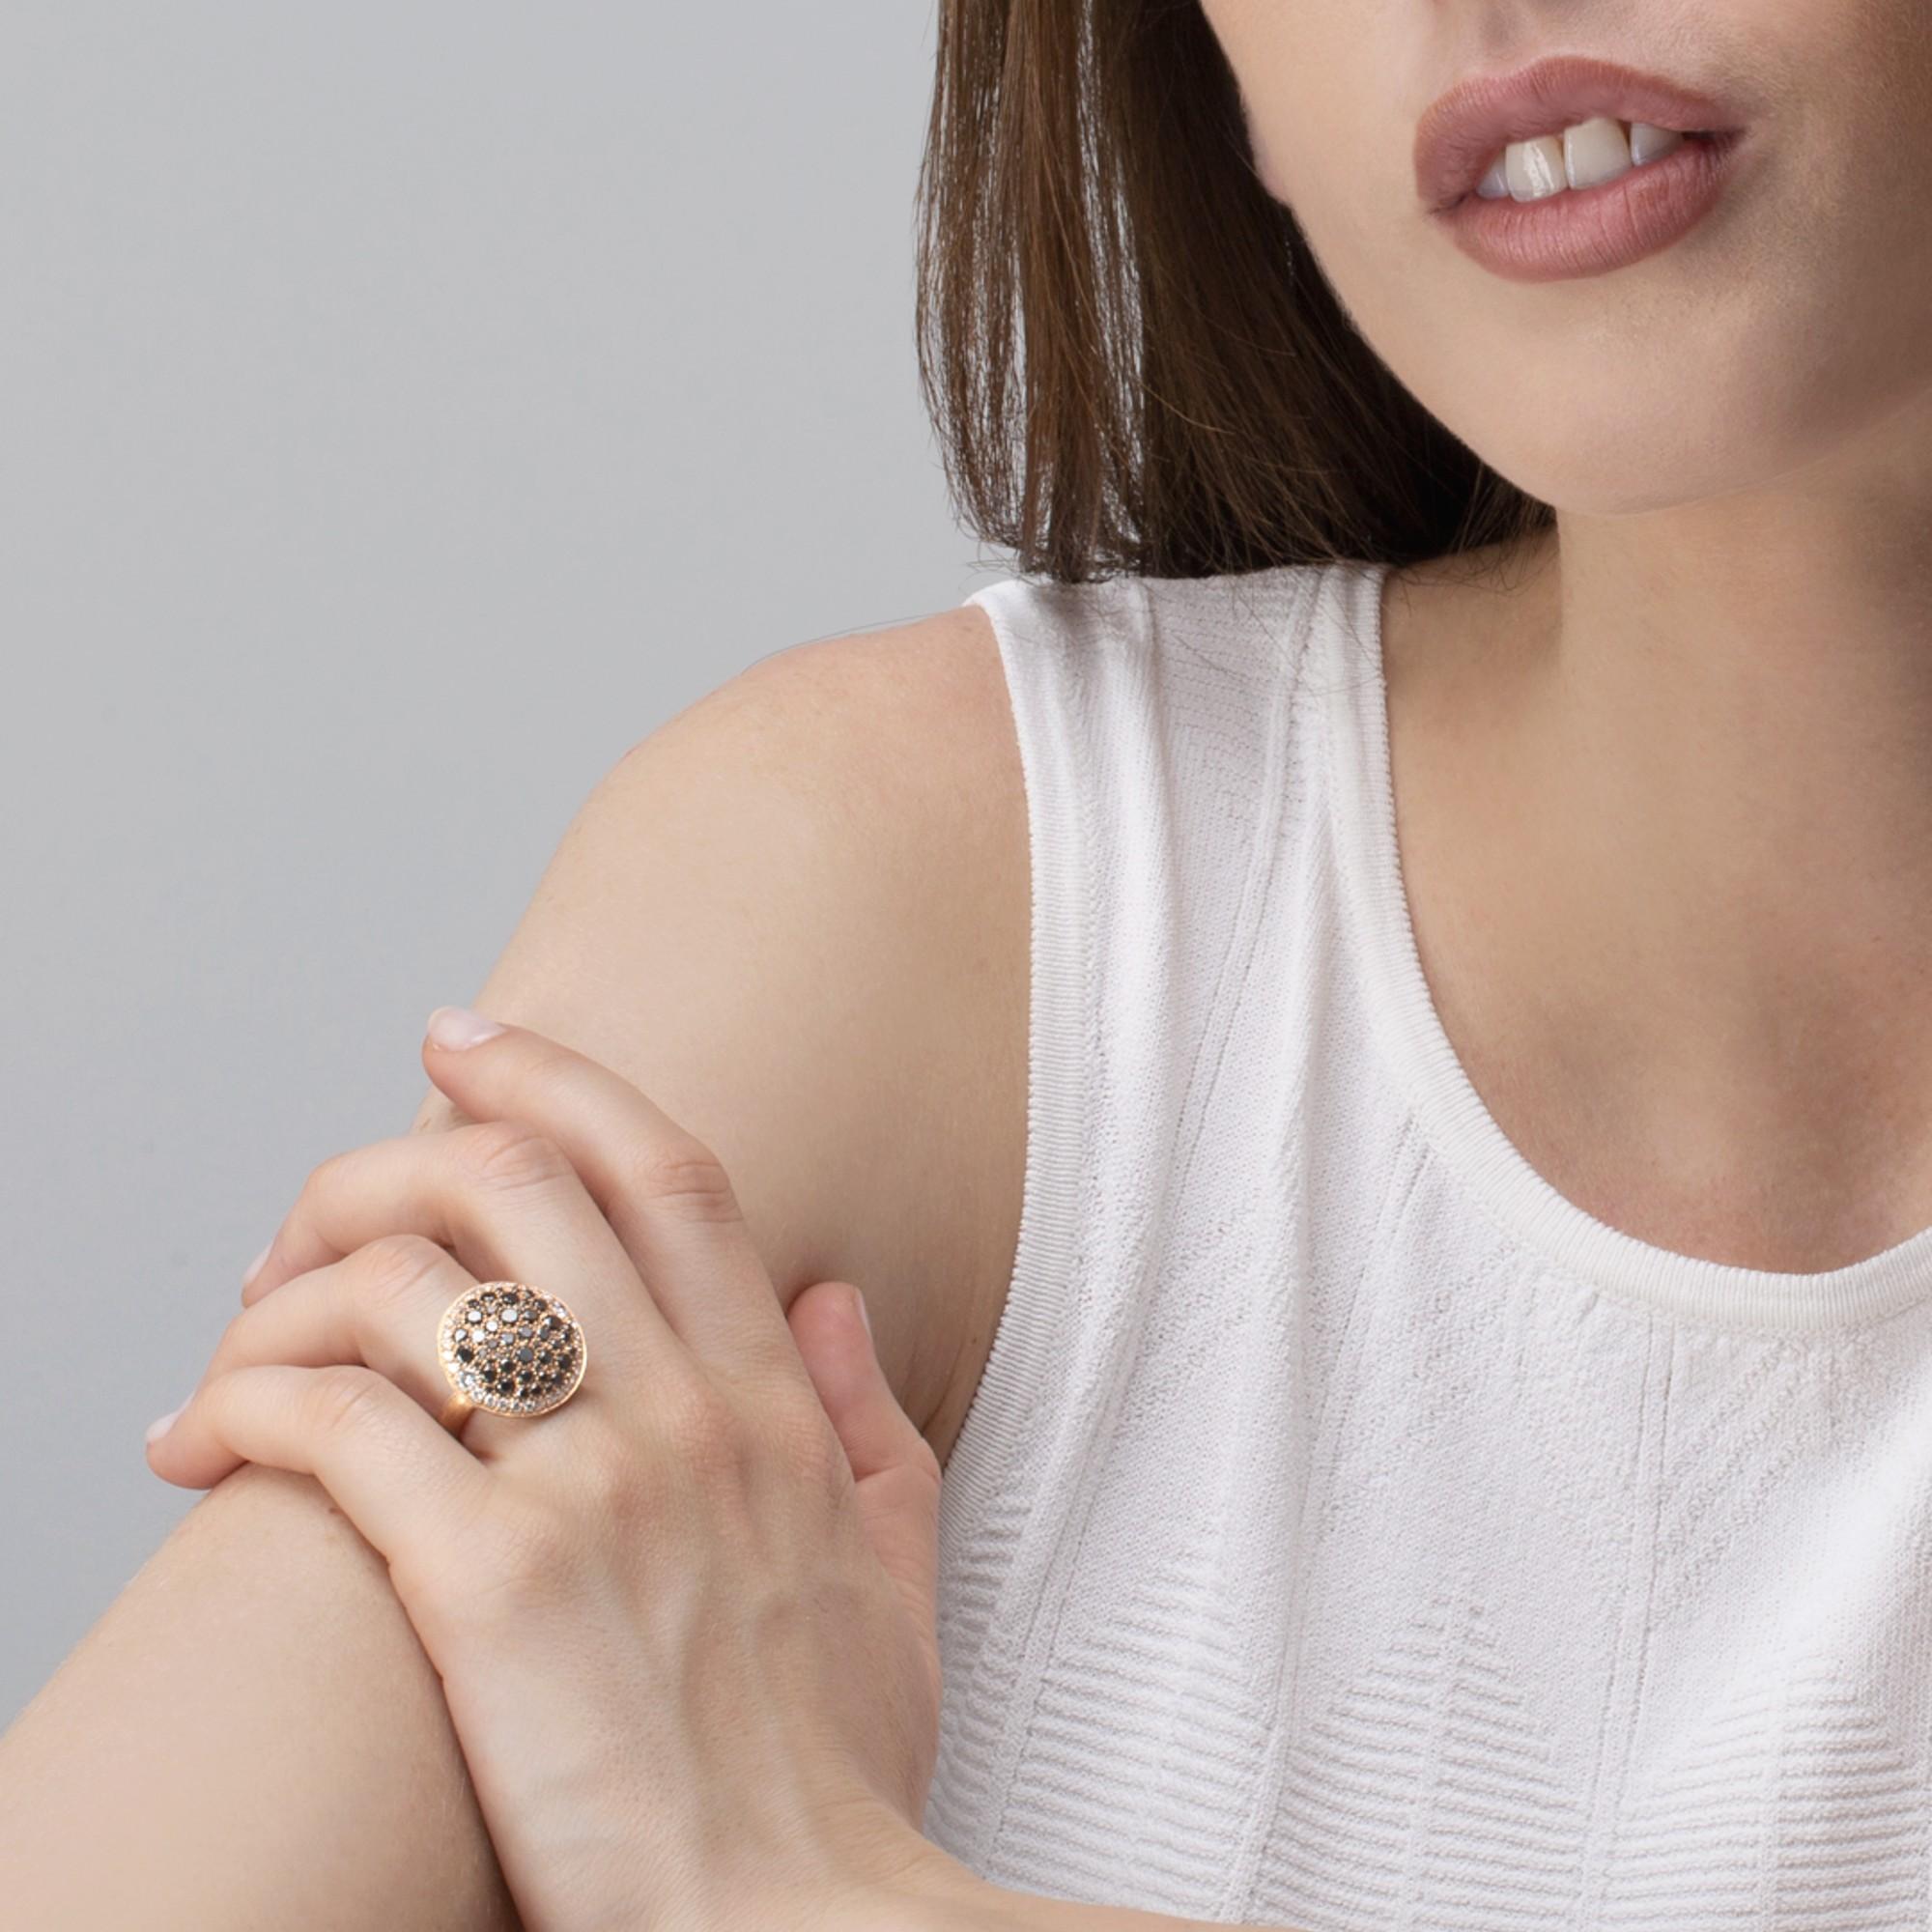 Colección de diseño Alex Jona, hecho a mano en Italia, anillo de oro rosa de 18 quilates, engastado con 0,97 quilates de diamantes blancos y 1,82 quilates de diamantes negros.  Talla US 6, puede ajustarse a cualquier medida.  

Las joyas de Alex